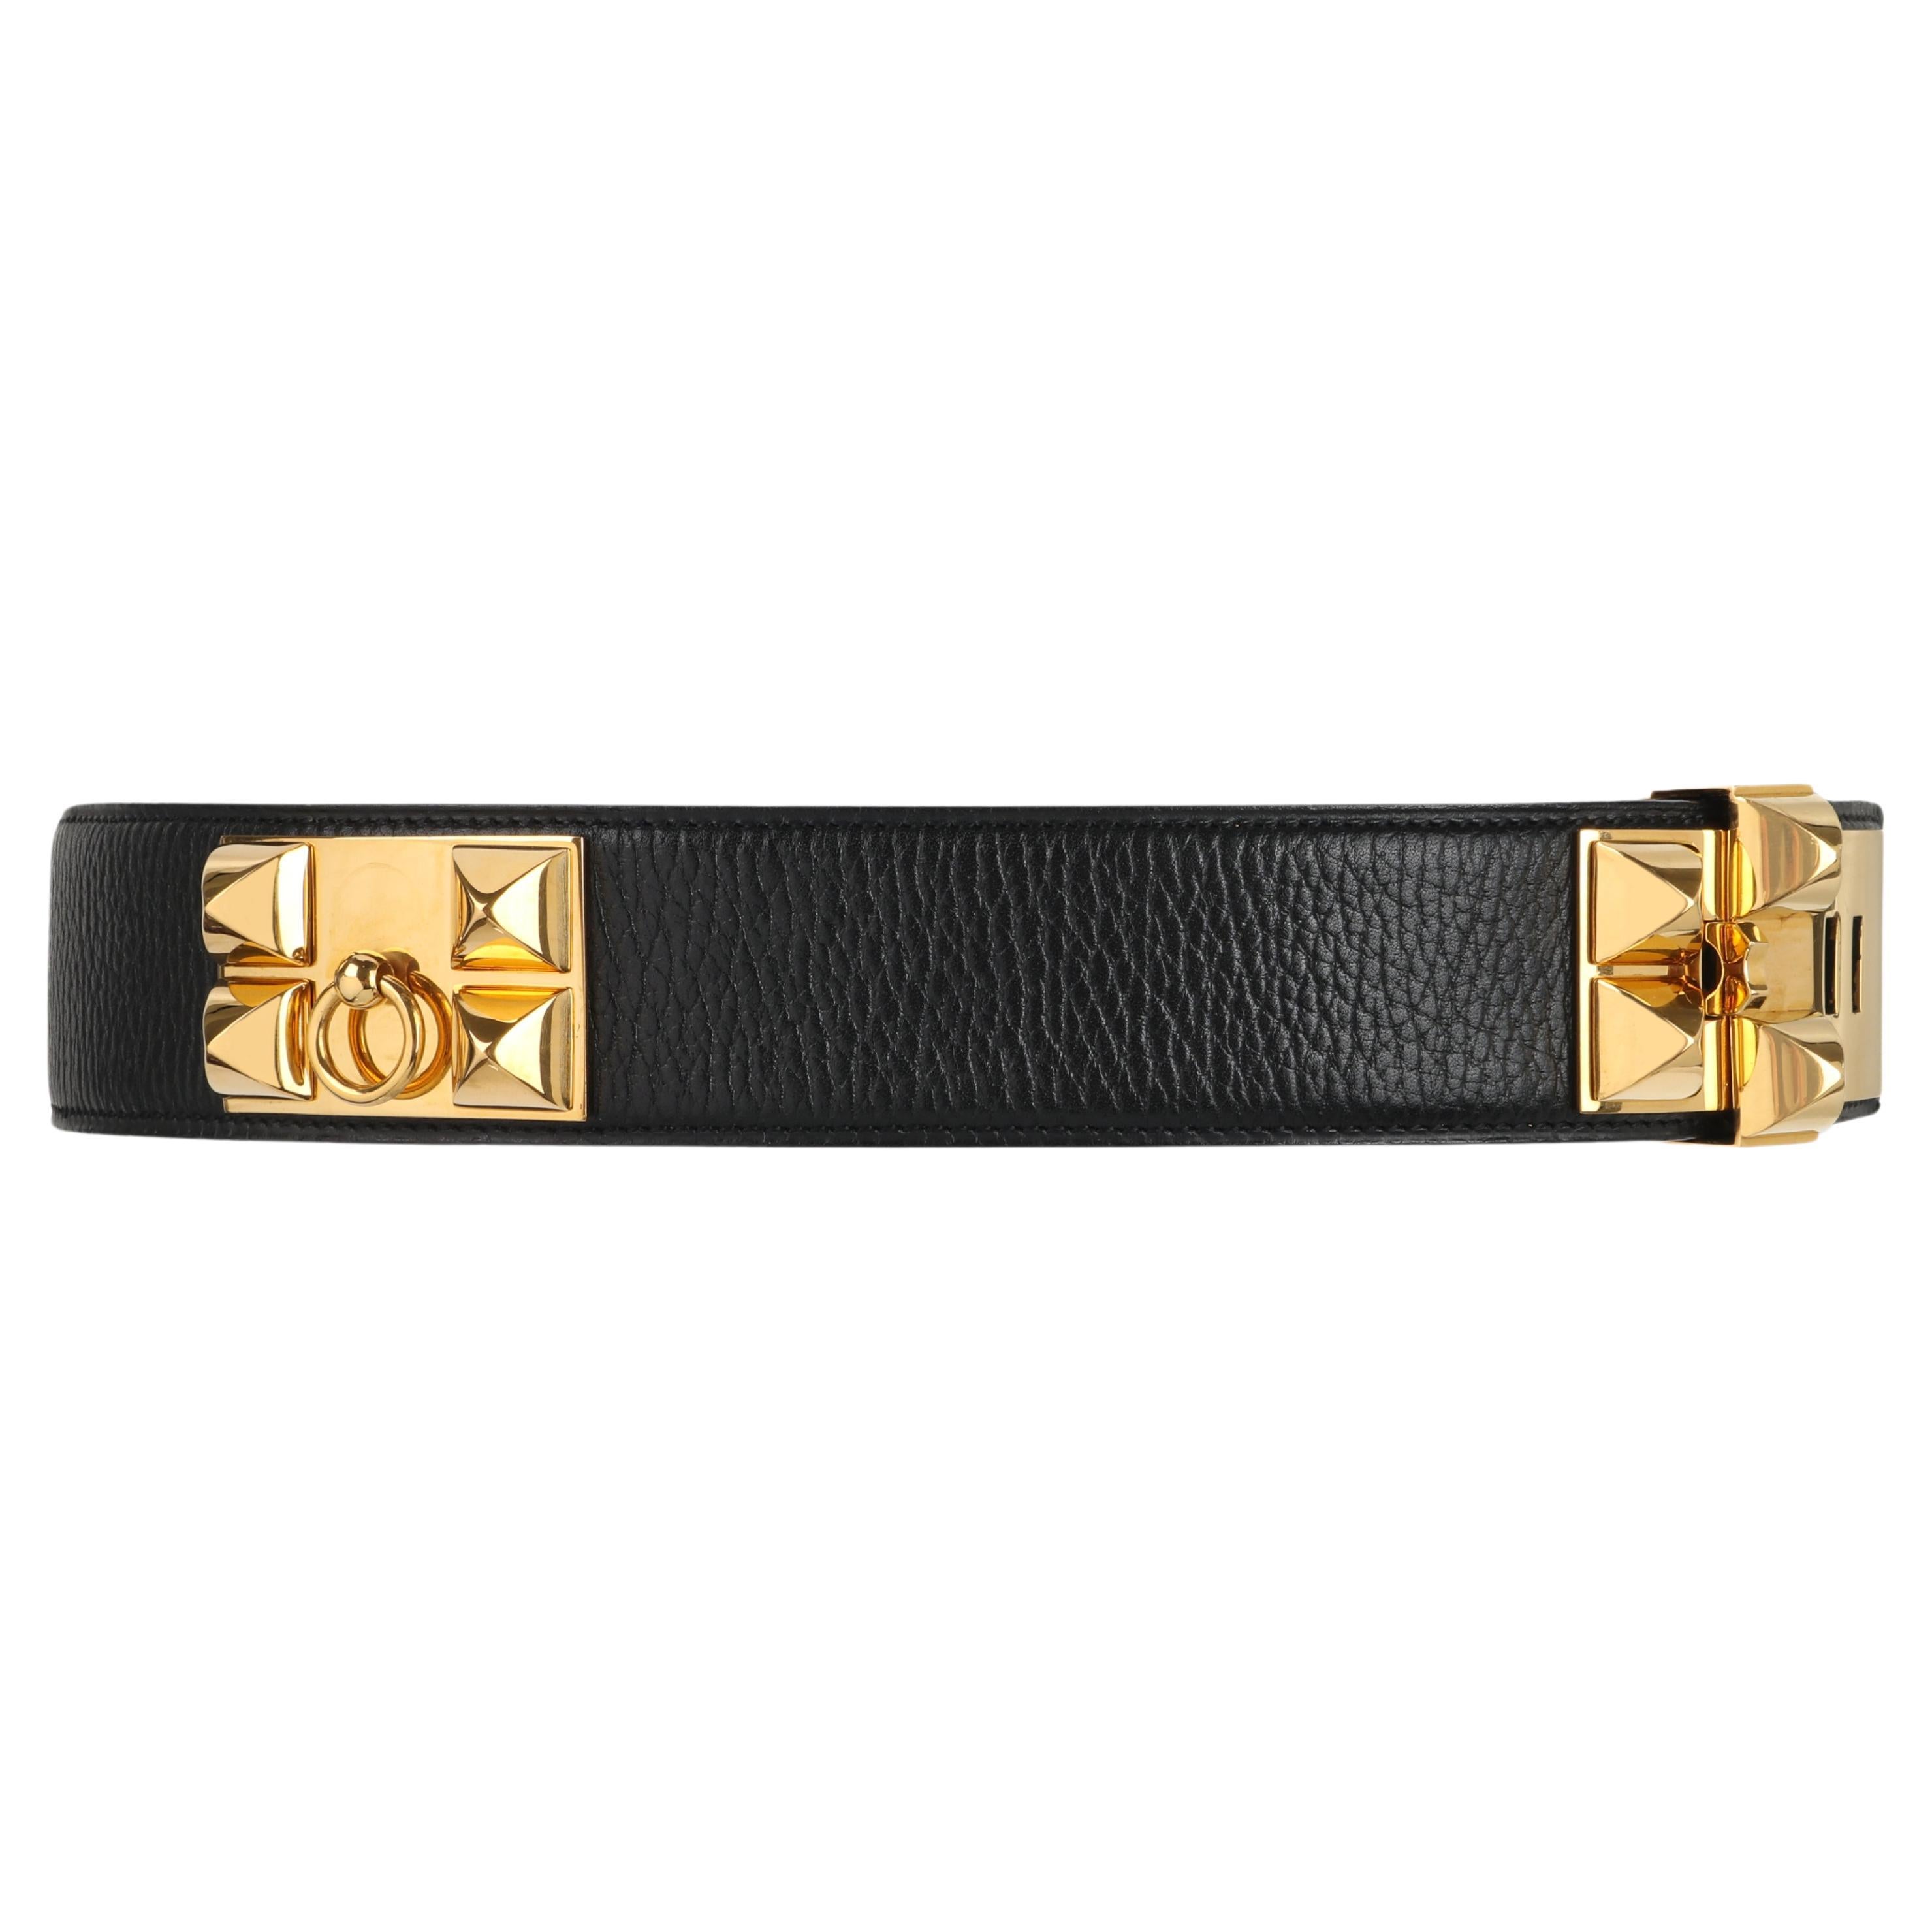 HERMES c.2006 "Collier de Chien" Black Gold Leather Studded Adjustable Belt